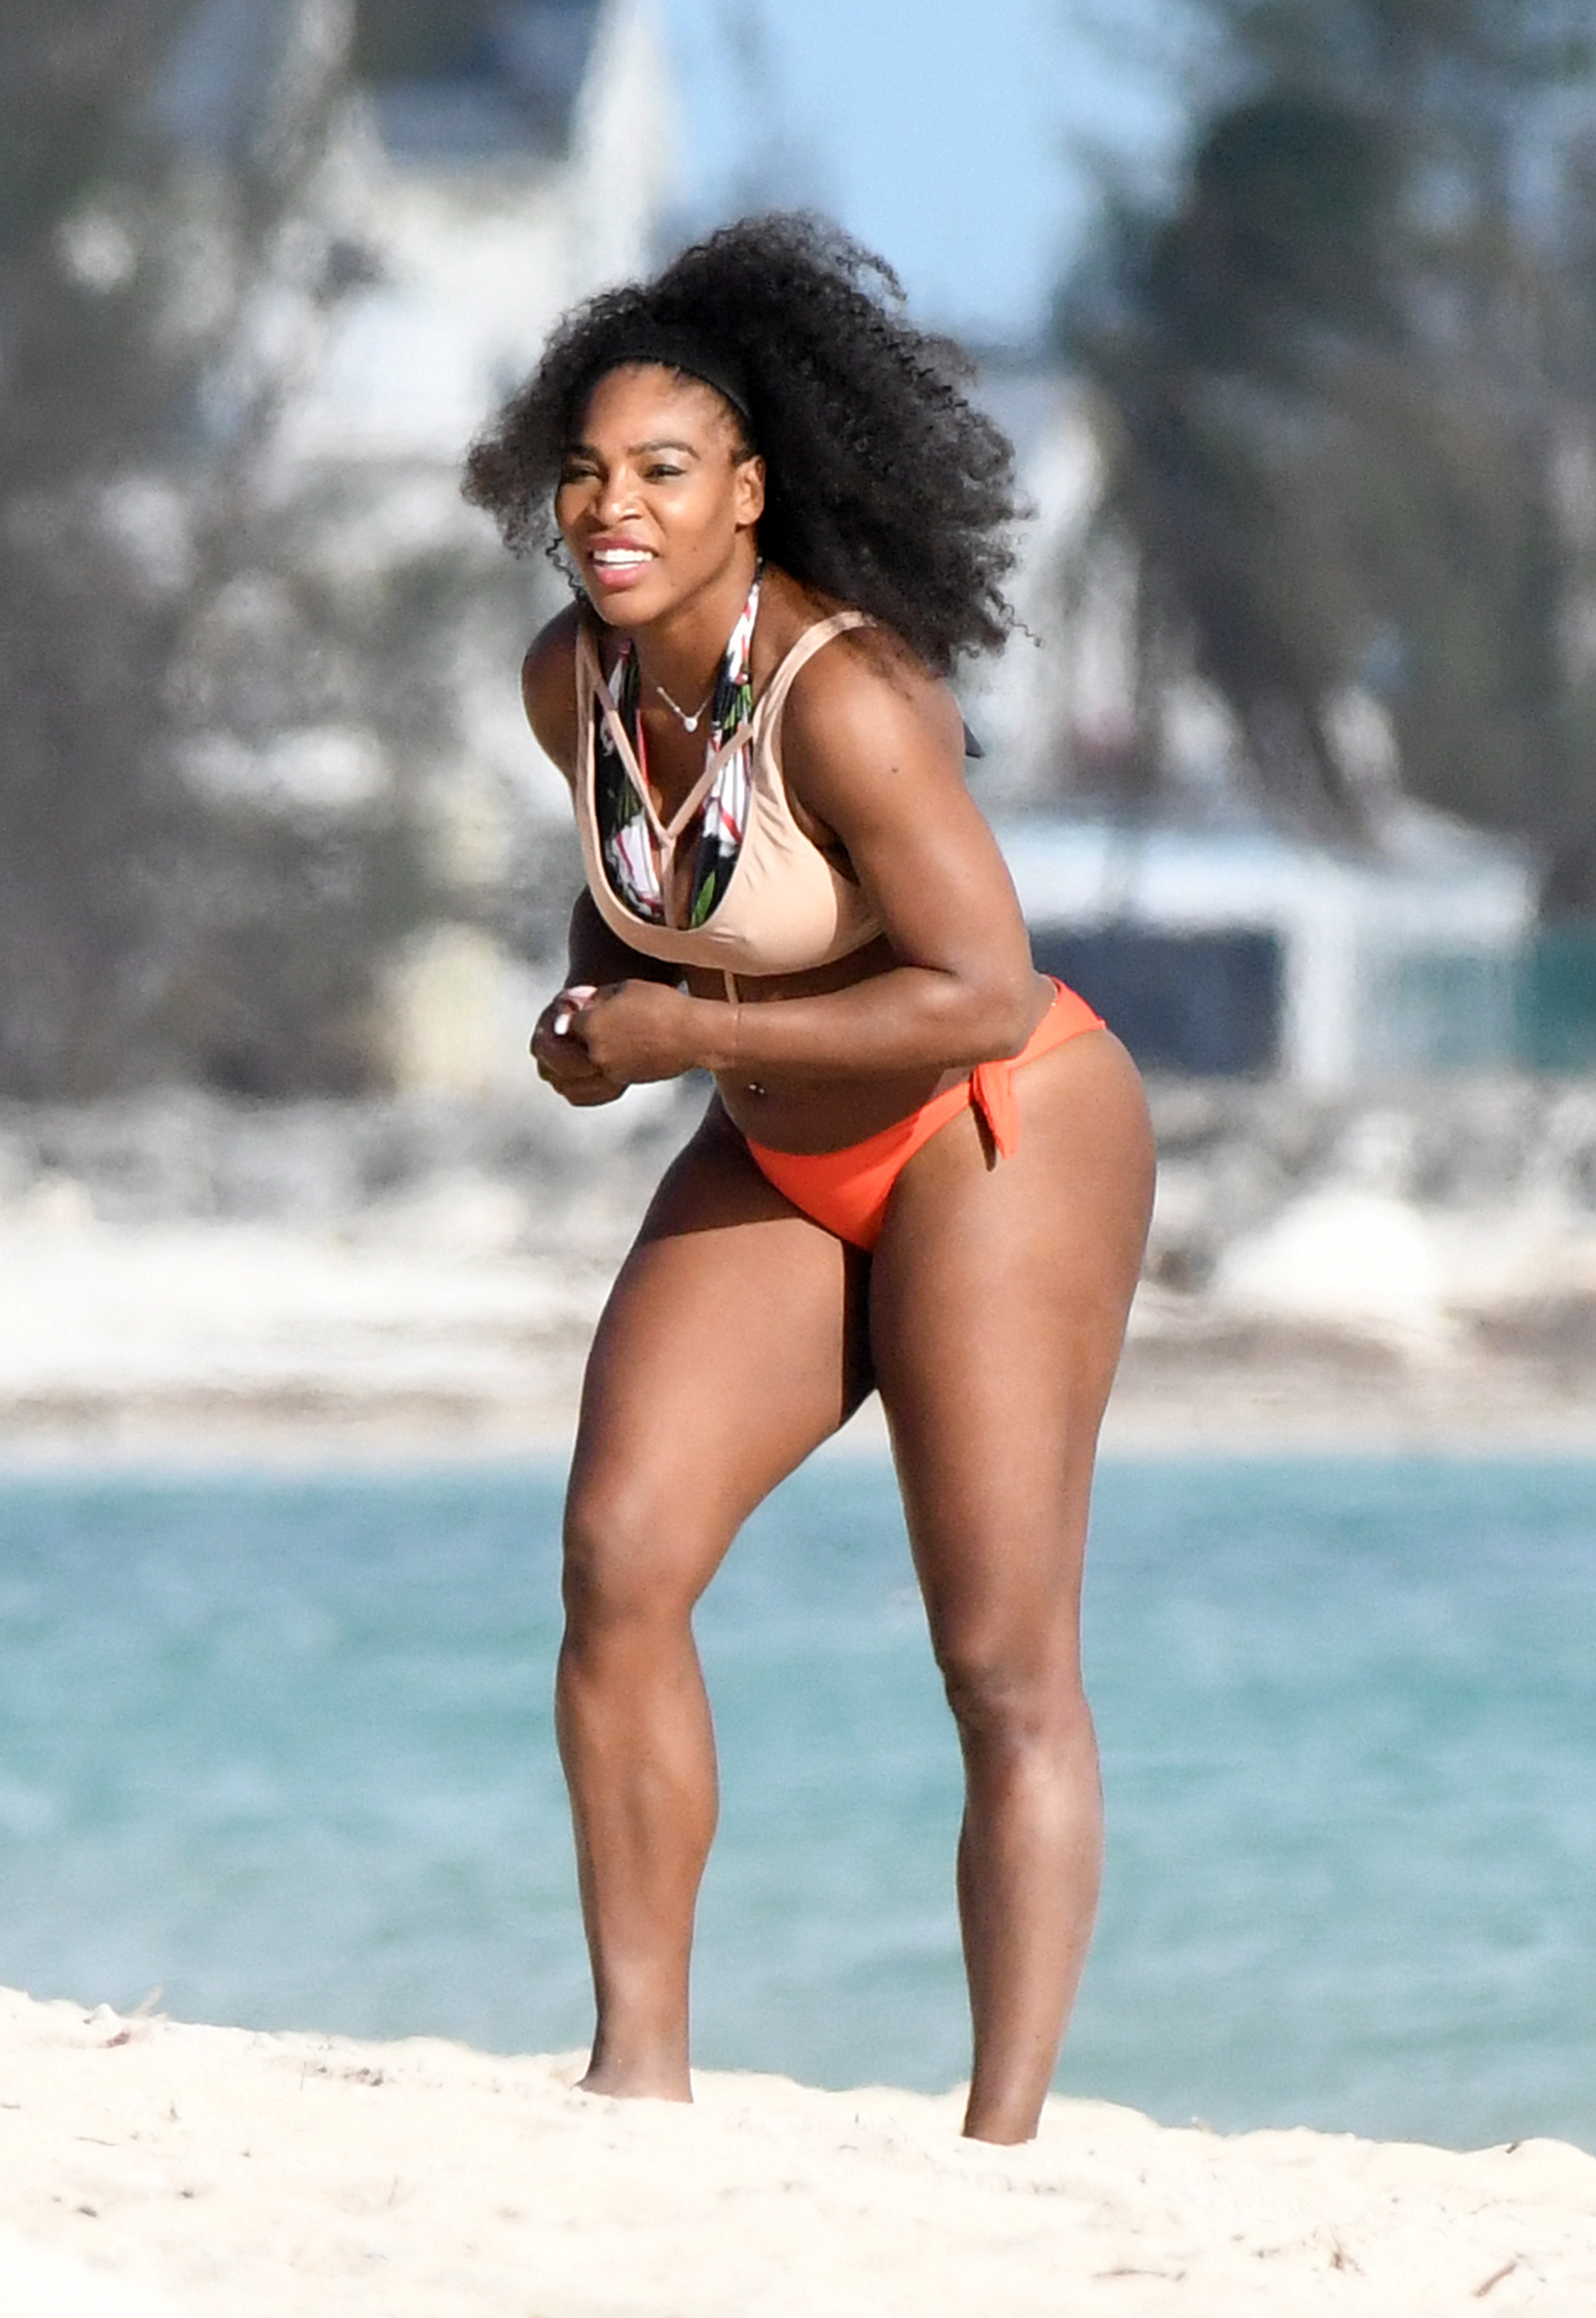 Serena williams hot body